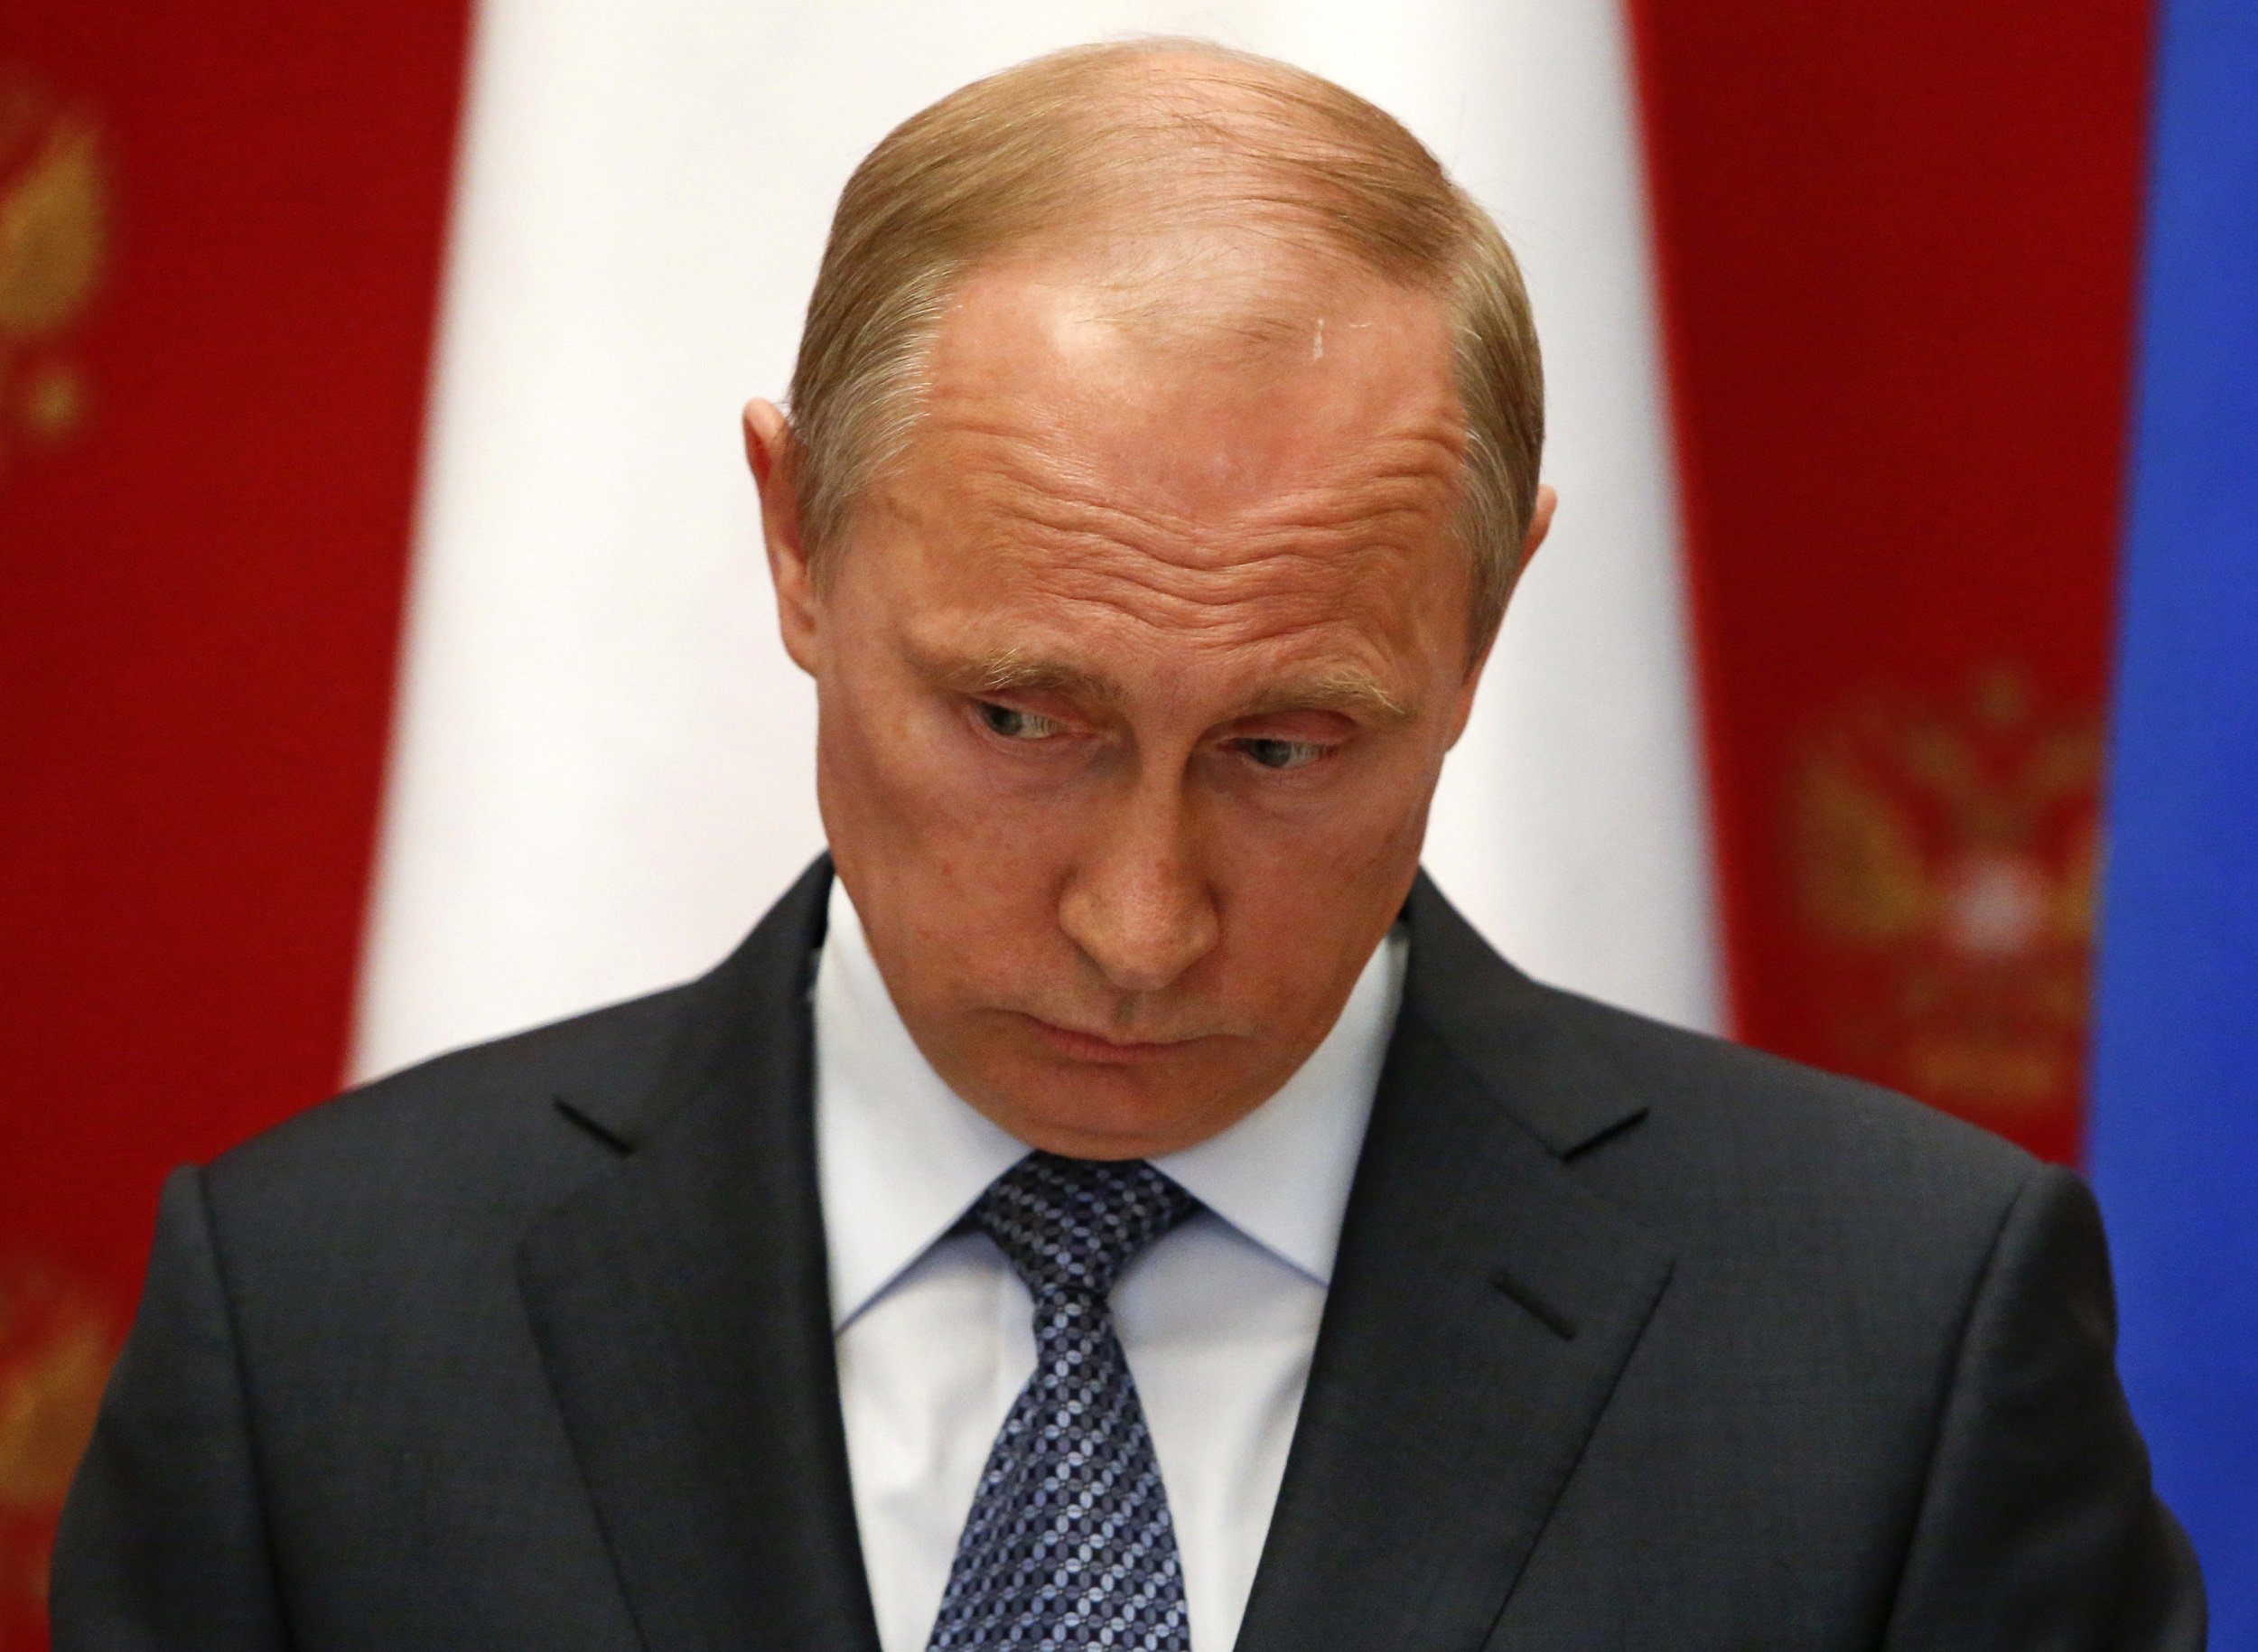 Putin Calls for a Delay in East Ukraine's Secession Vote